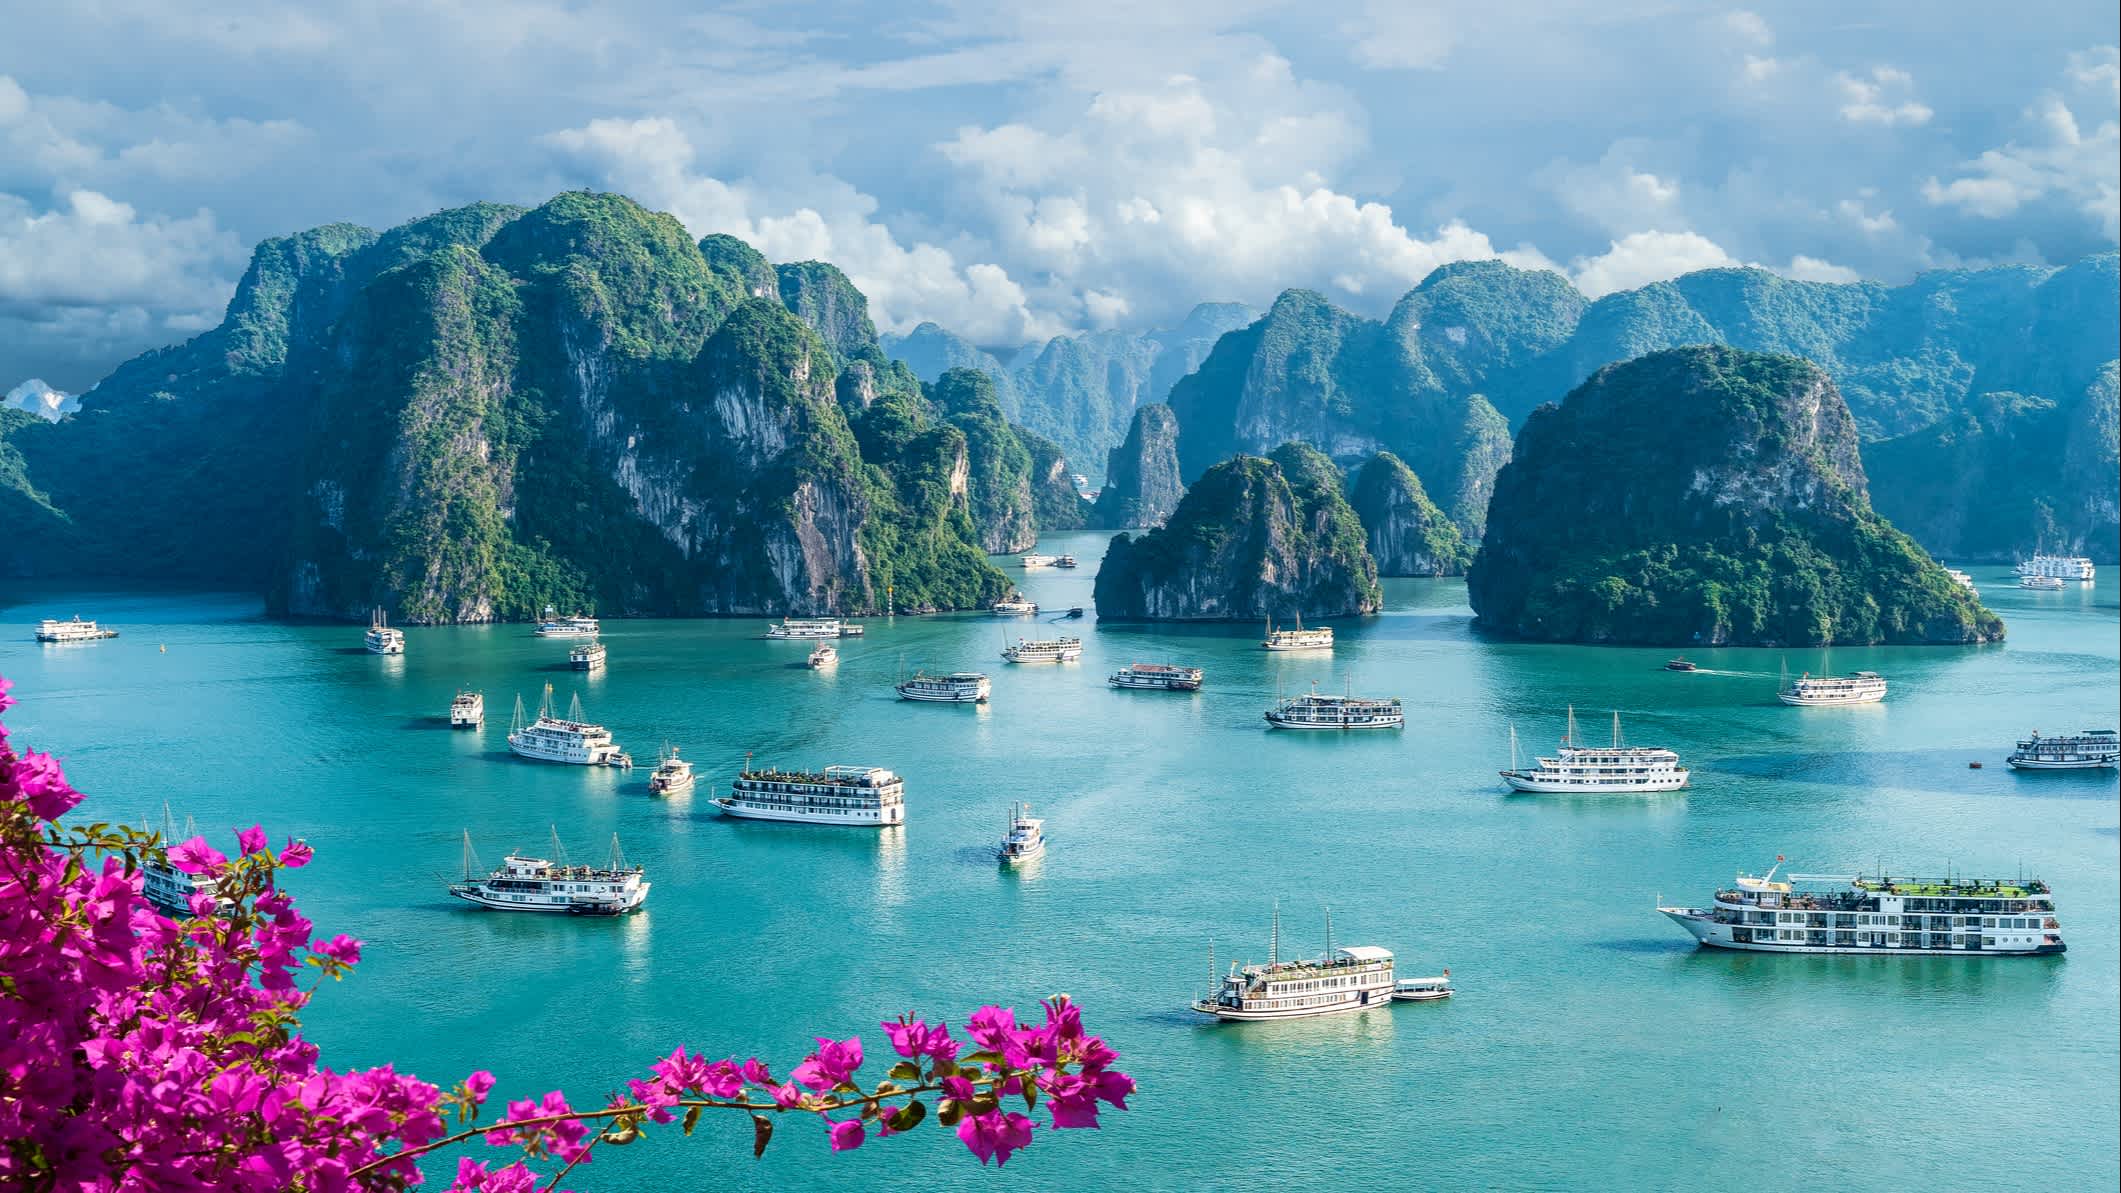 Landschaft mit erstaunlicher Halong-Bucht, Vietnam

